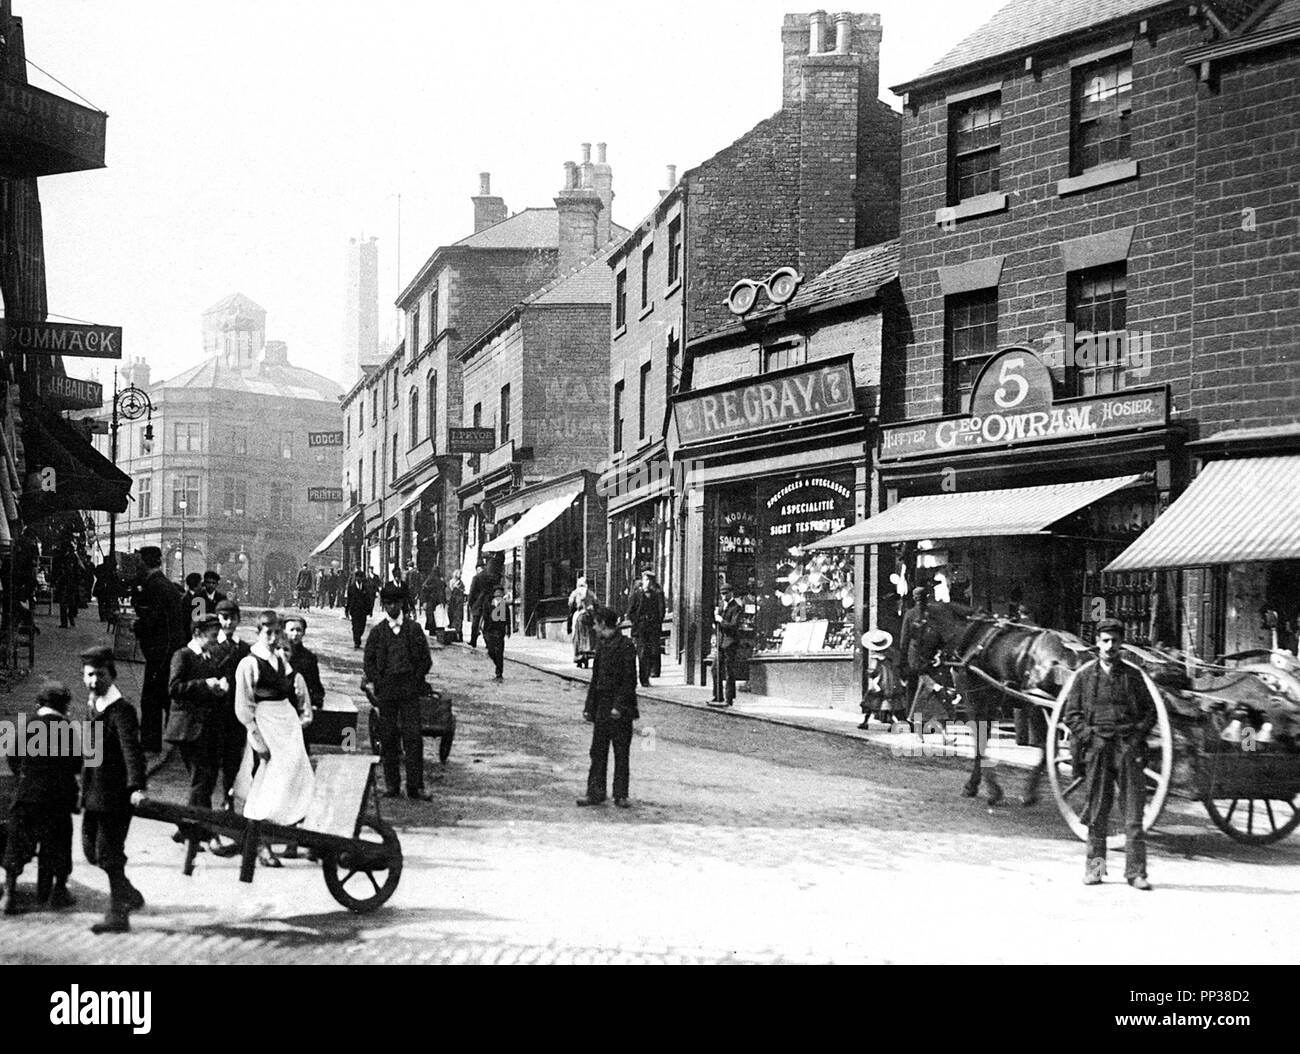 New Street, Barnsley, early 1900s Stock Photo